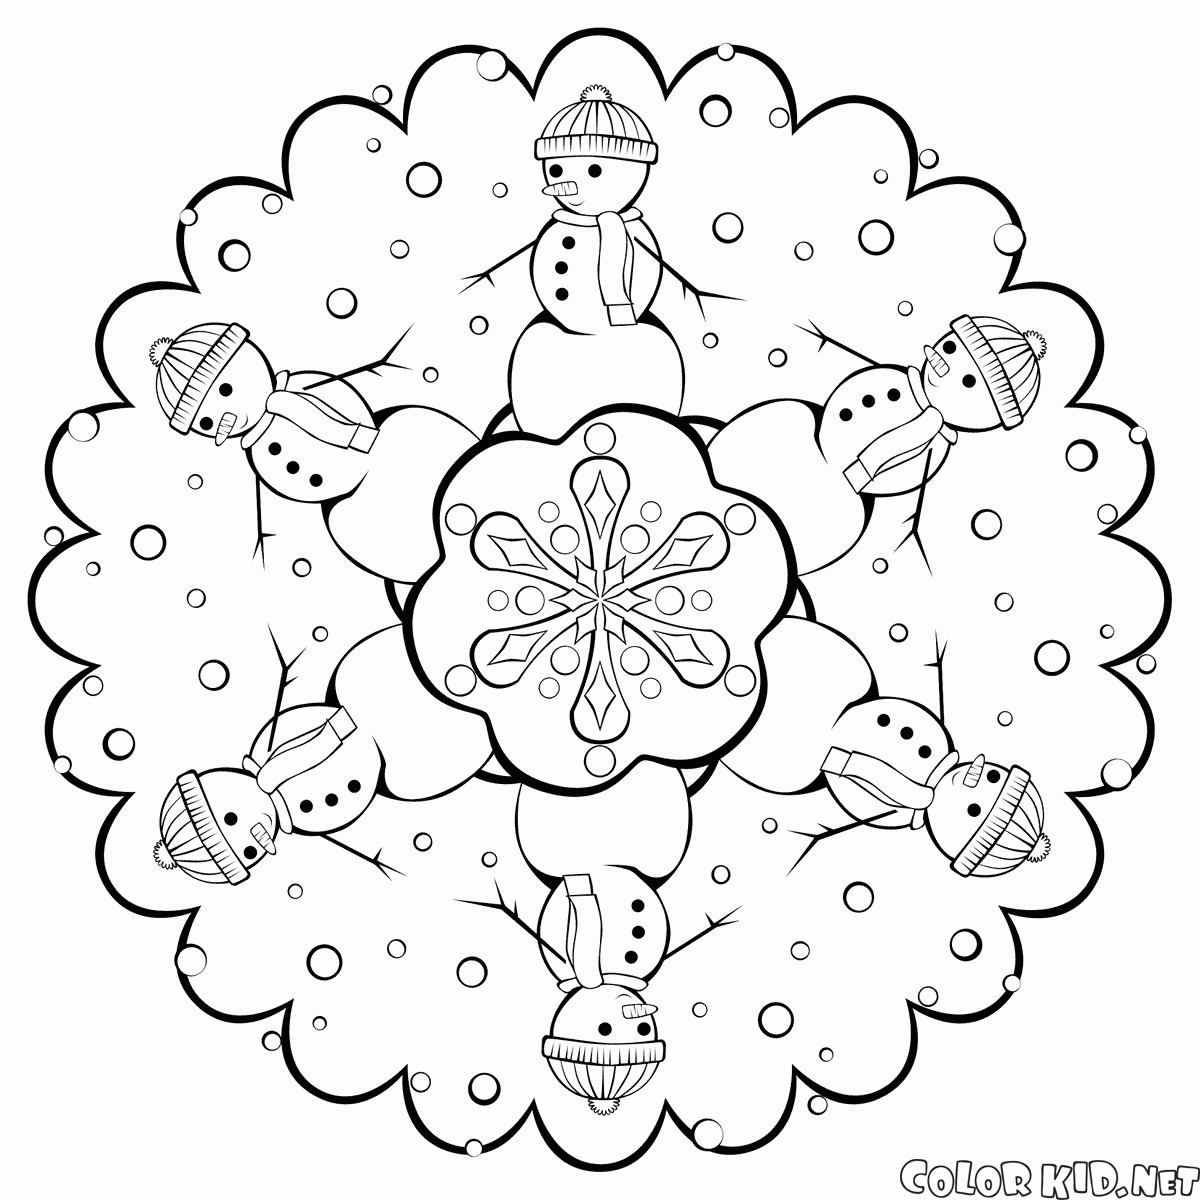 Dibujo para colorear - Copo de nieve con muñecos de nieve